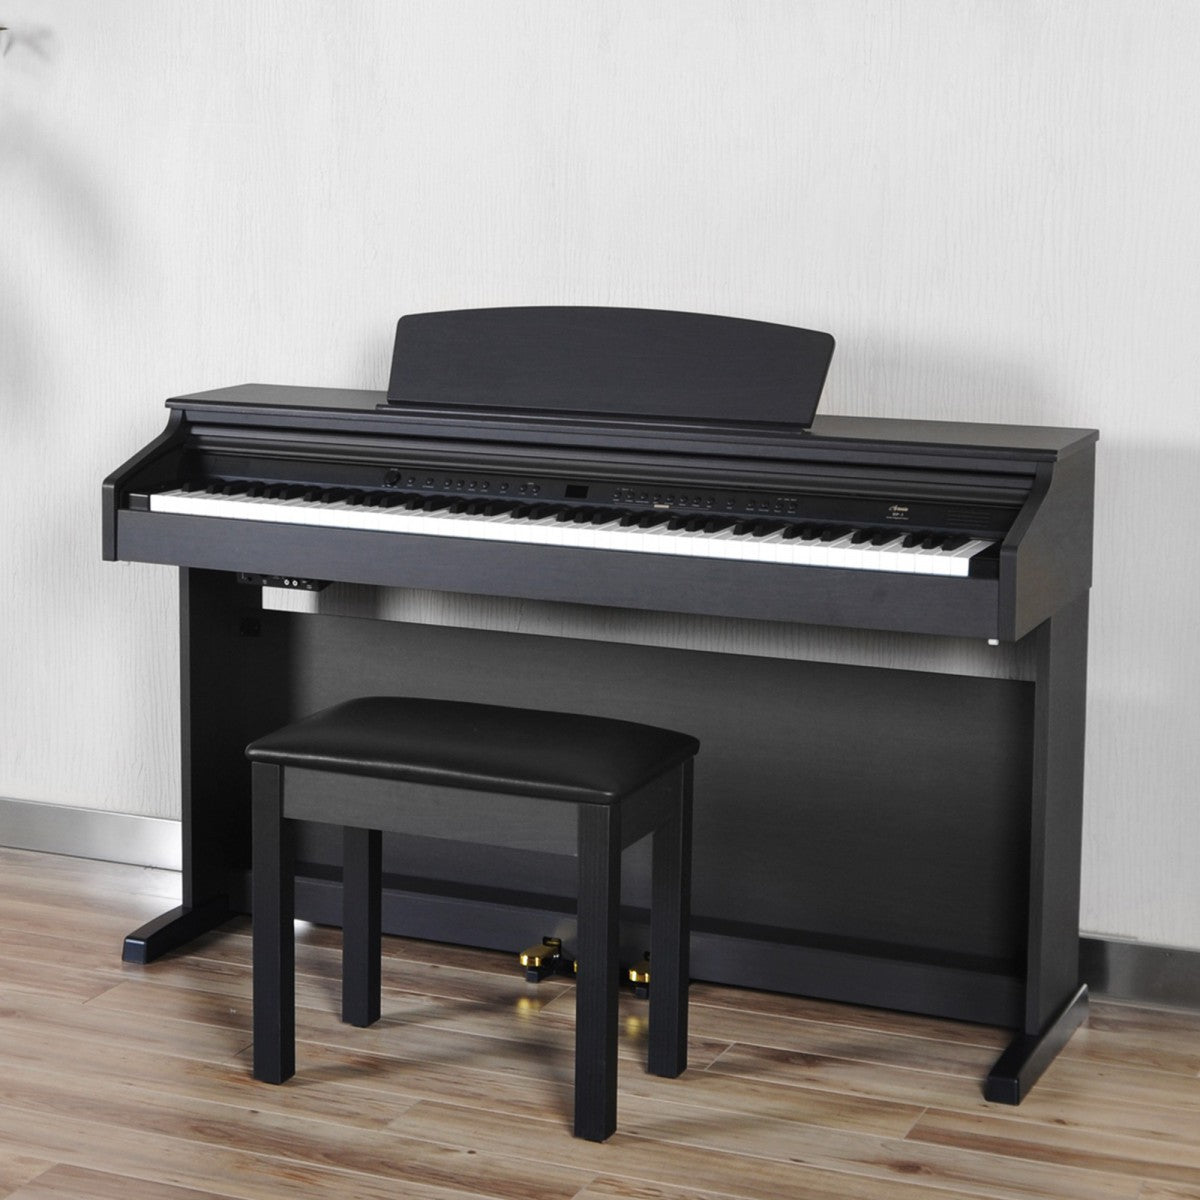 Artesia DP-3-SR Gülağacı - Dijital Piyano